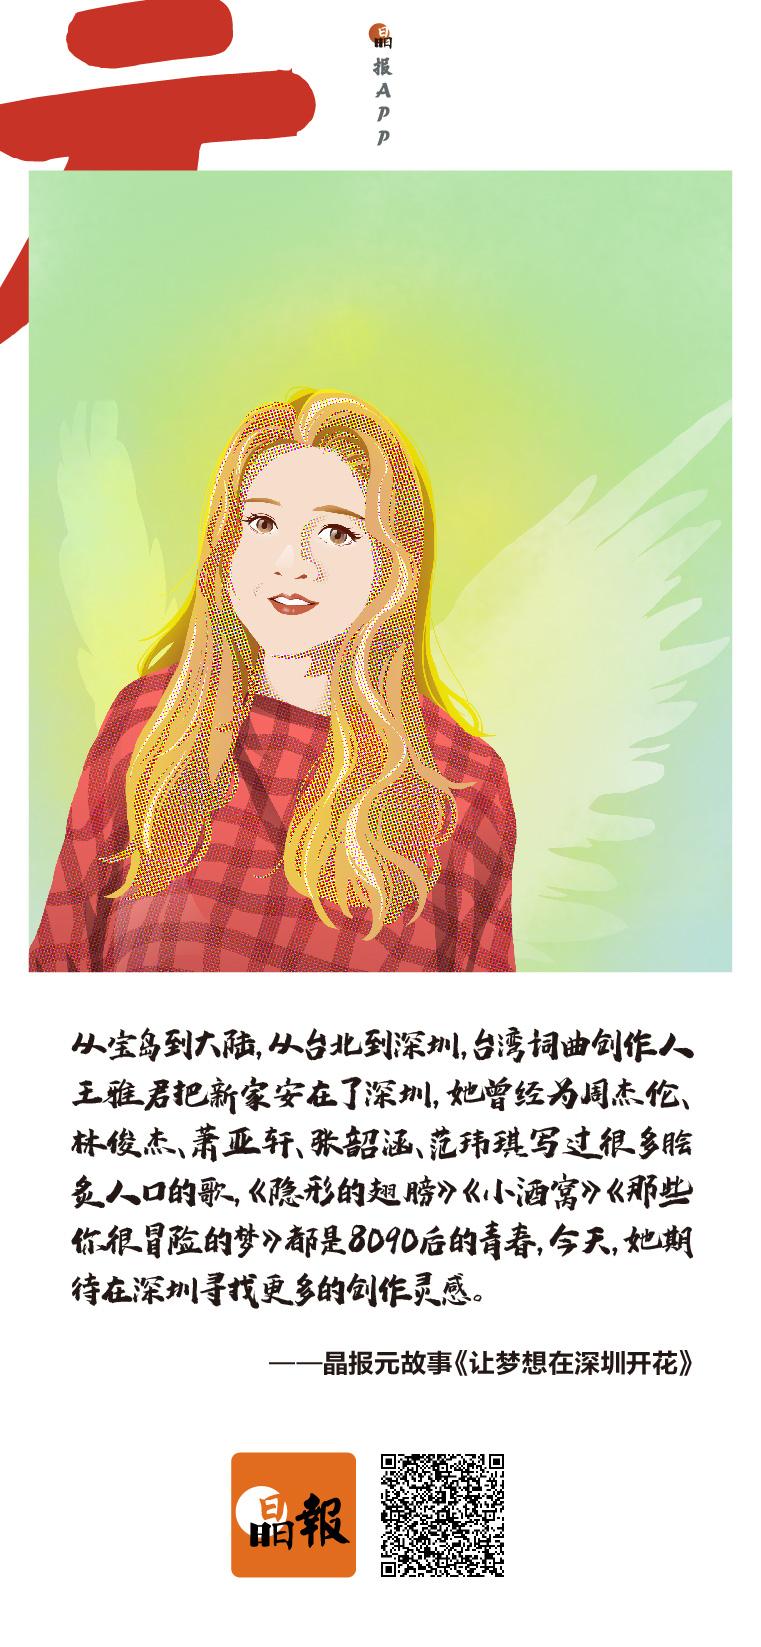 ​写火《隐形的翅膀》的台湾女孩，迁居深圳灵感迸发 |元故事海报